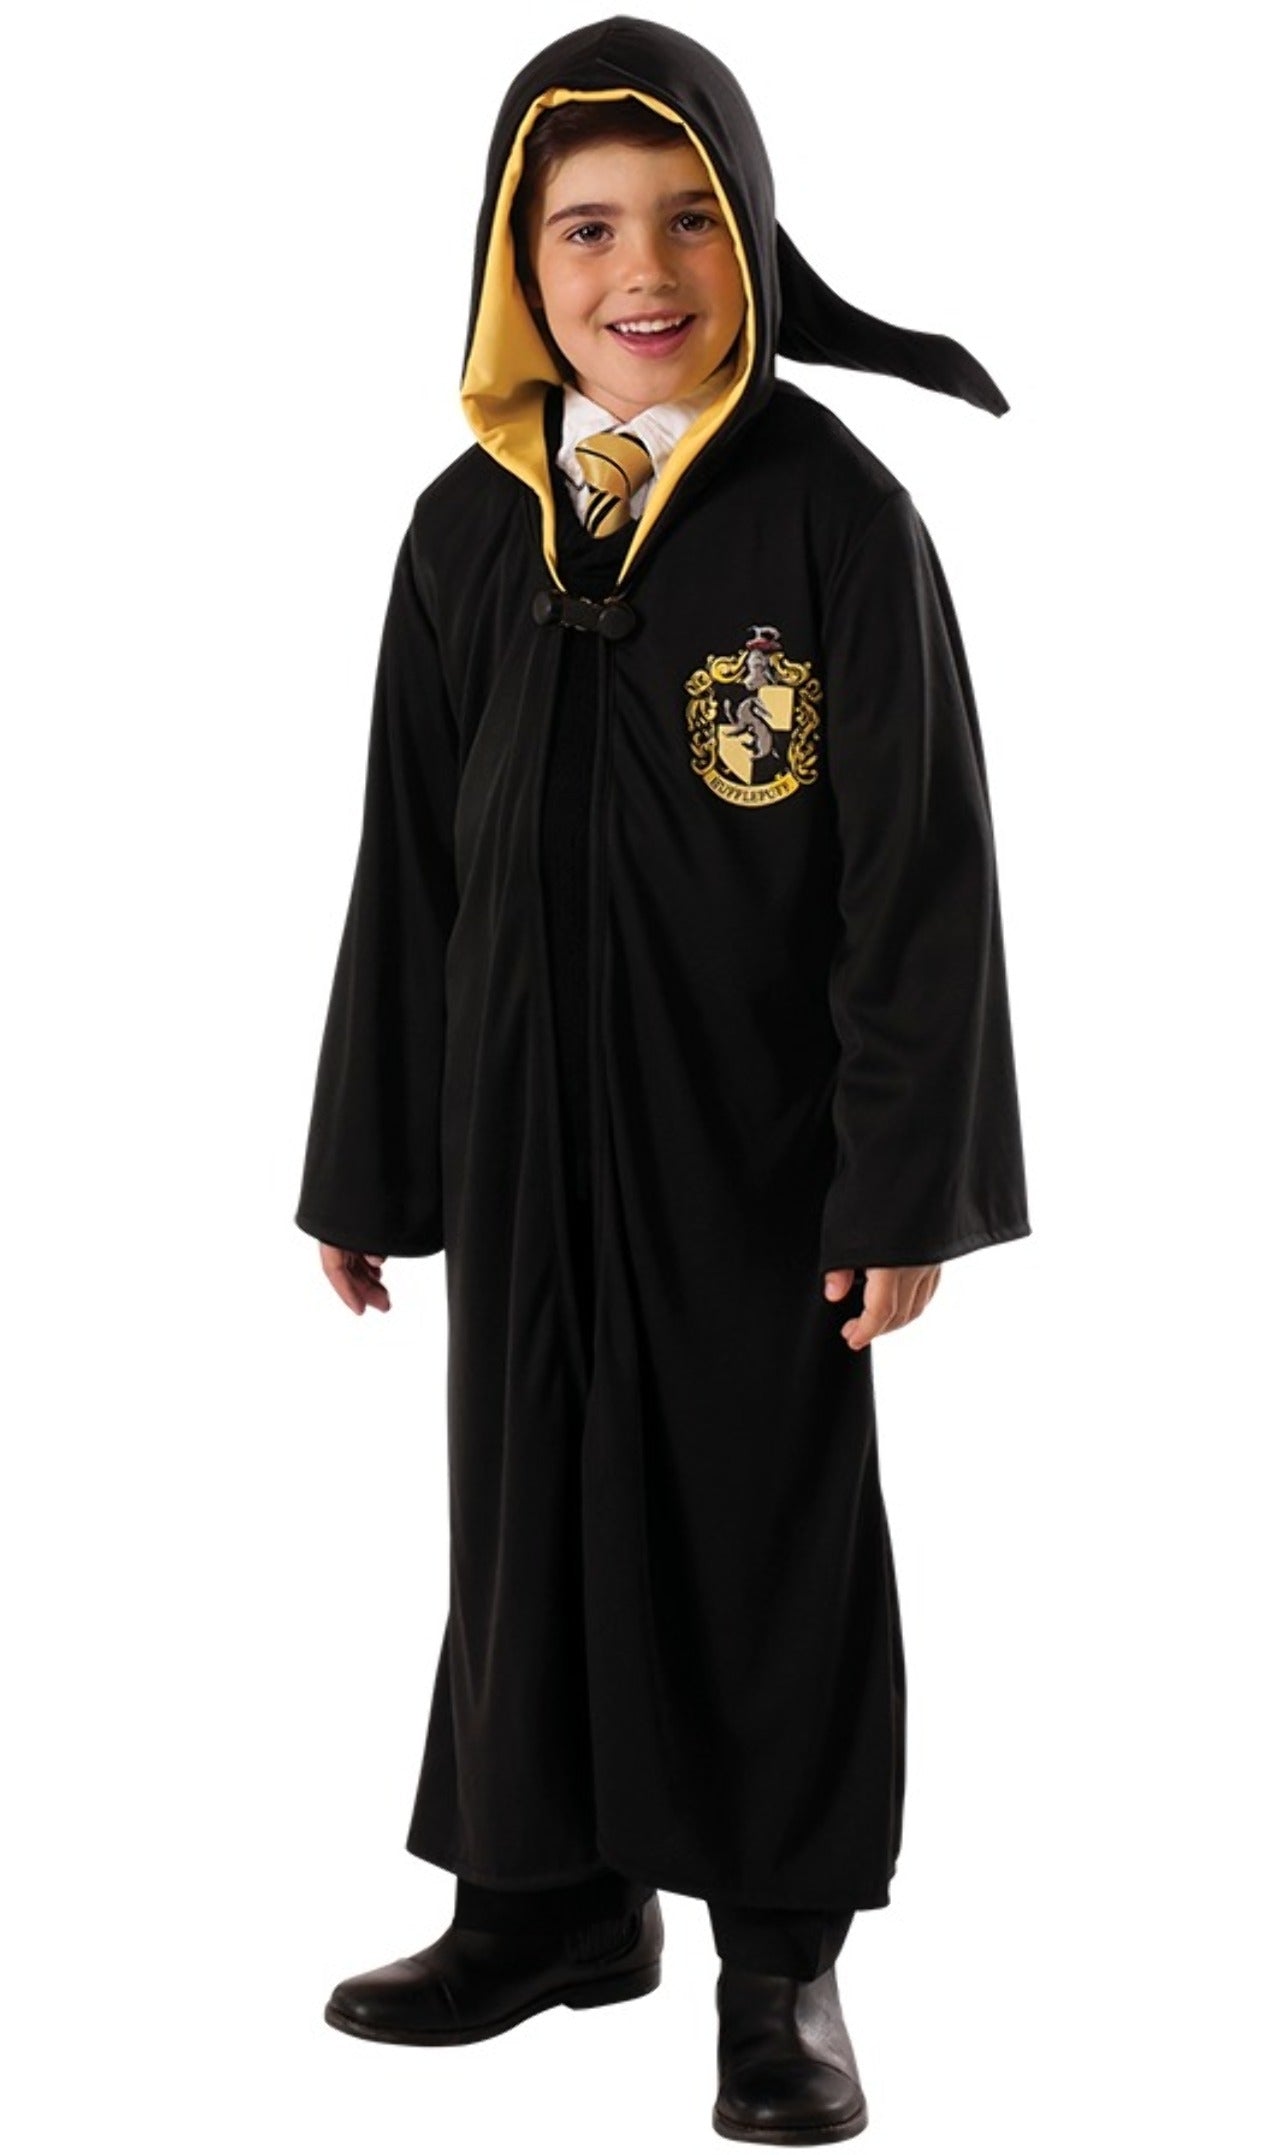 Calze Harry Potter Originale: Acquista Online in Offerta